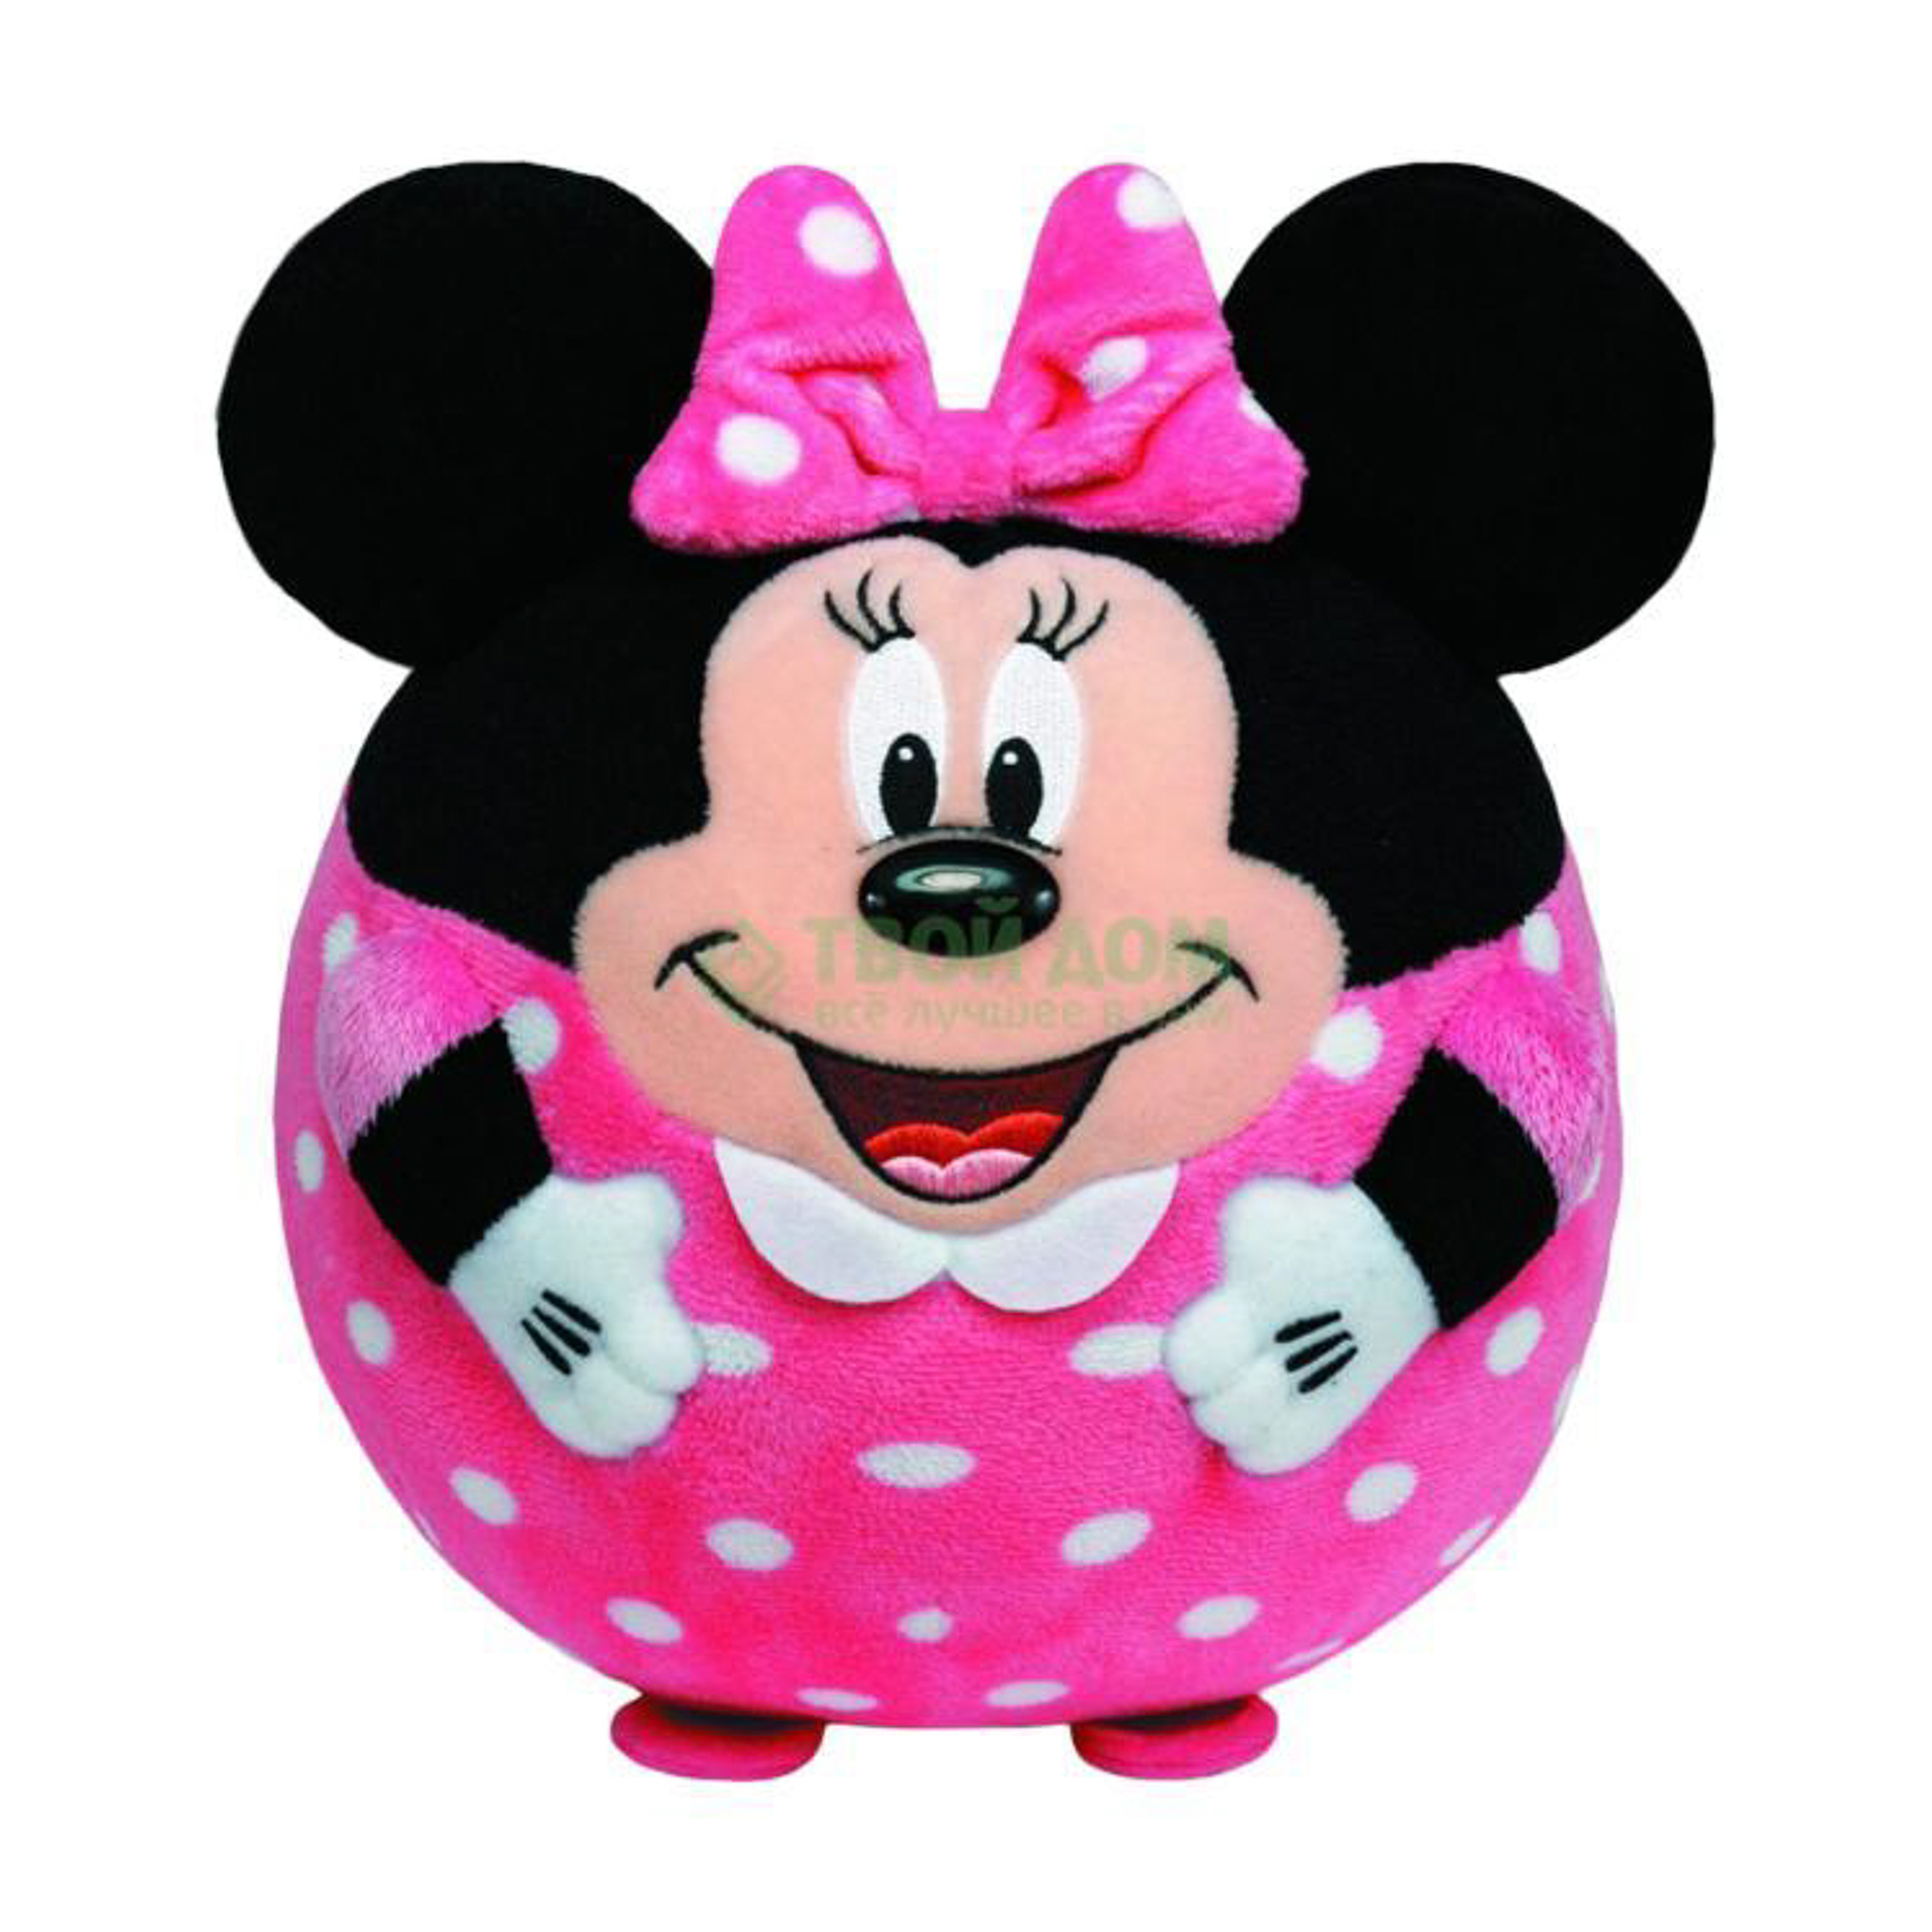 Игрушка минни. Игрушка Минни Маус Дисней. Мягкая игрушка ty Beanie Ballz Микки Маус 13 см. Minnie Mouse Disney игрушка. Игрушка Микки Маус девочка.